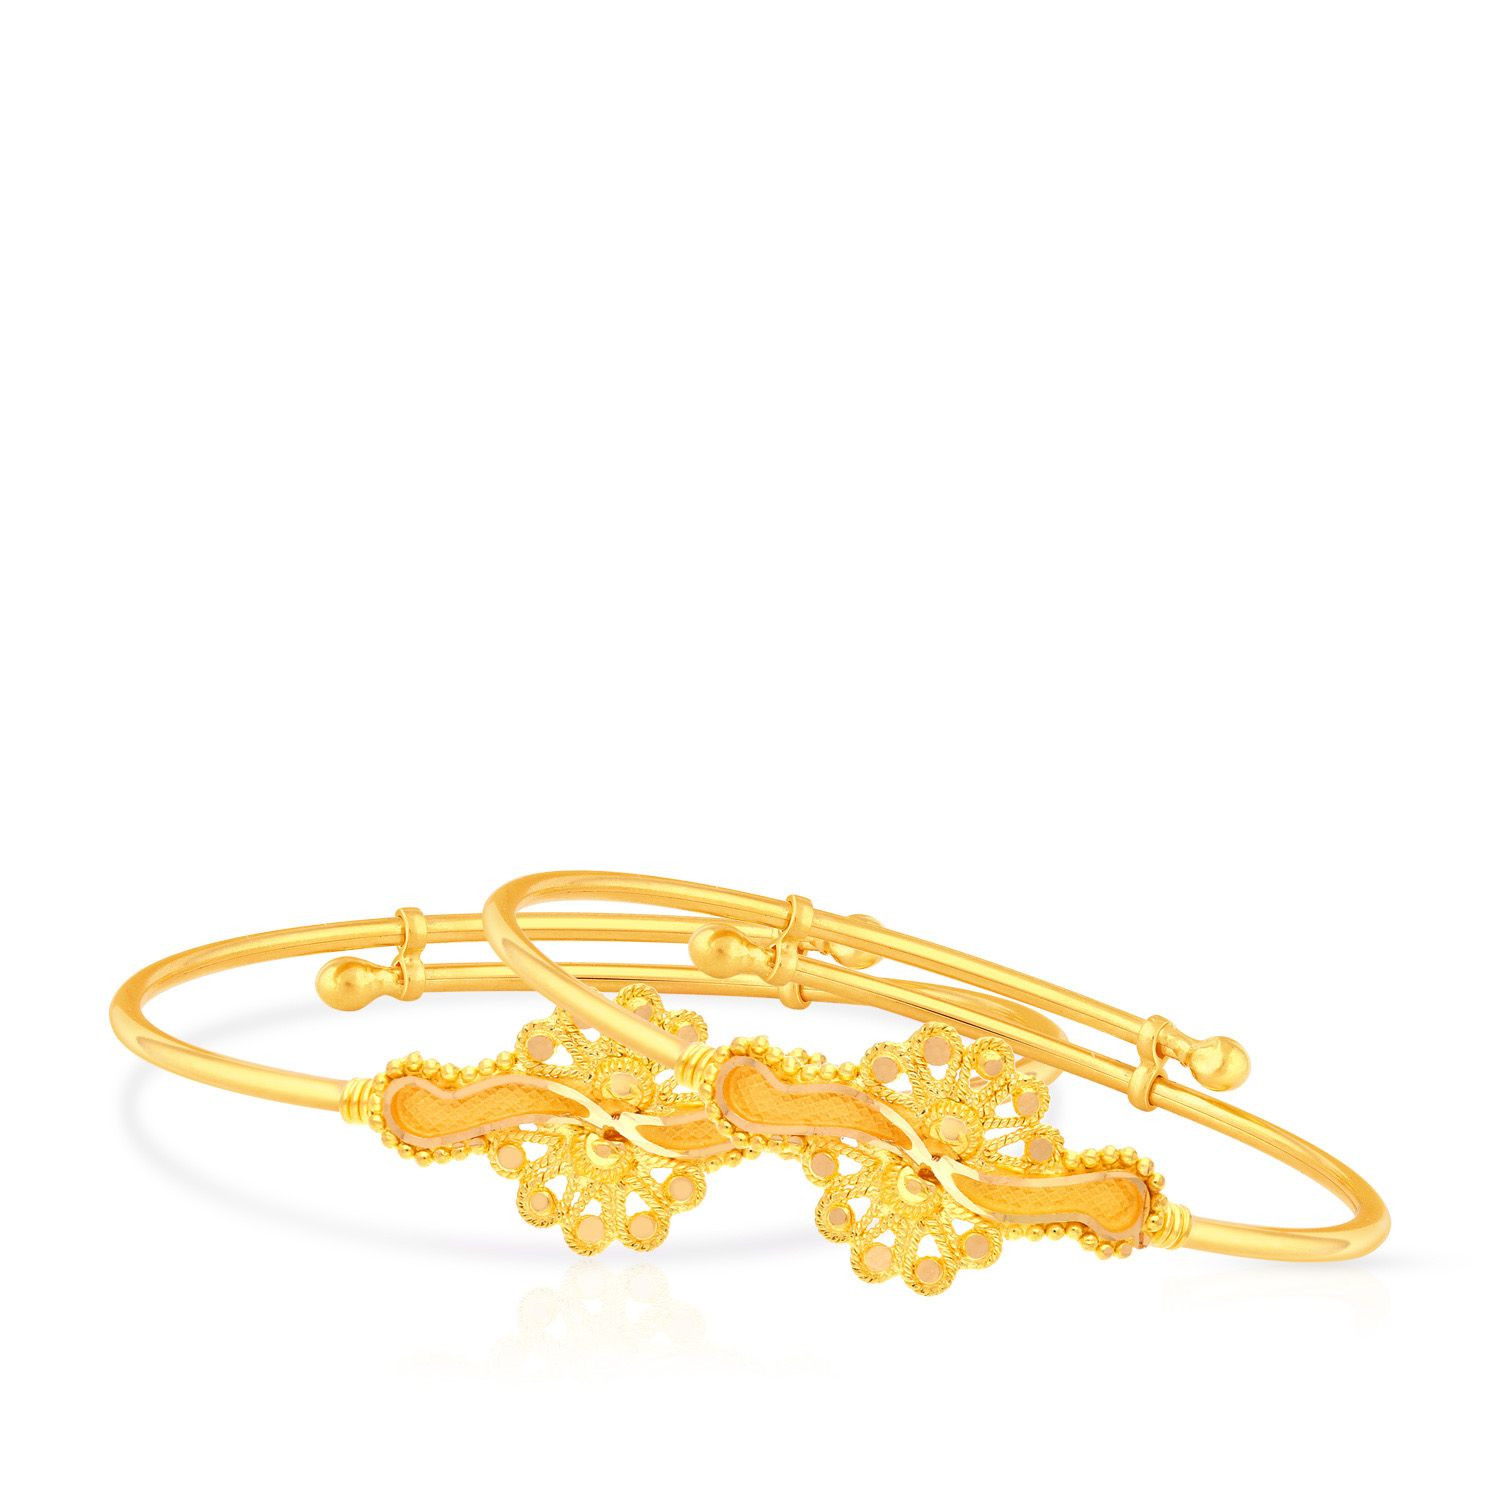 Top more than 155 infant bracelets 14k gold best